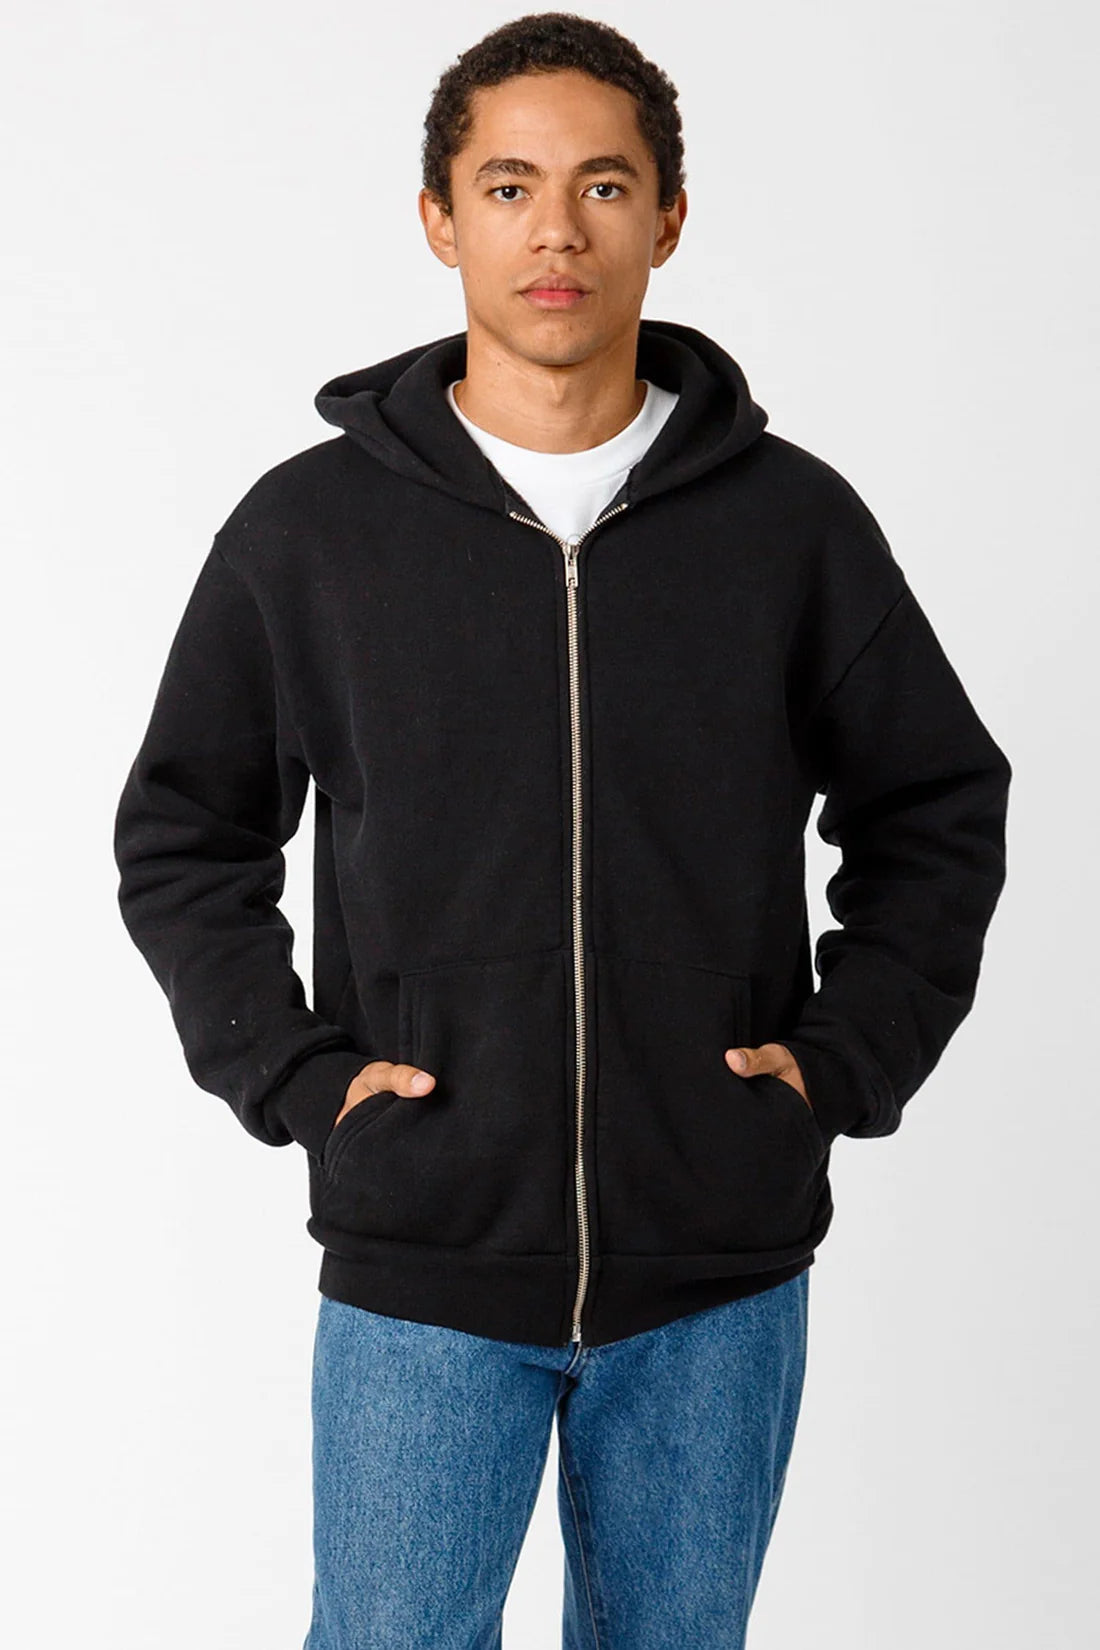 Los Angeles Apparel - HF-10 - 14oz. Heavy Fleece Zip Up Hooded Sweatsh –  Sky Sportswear